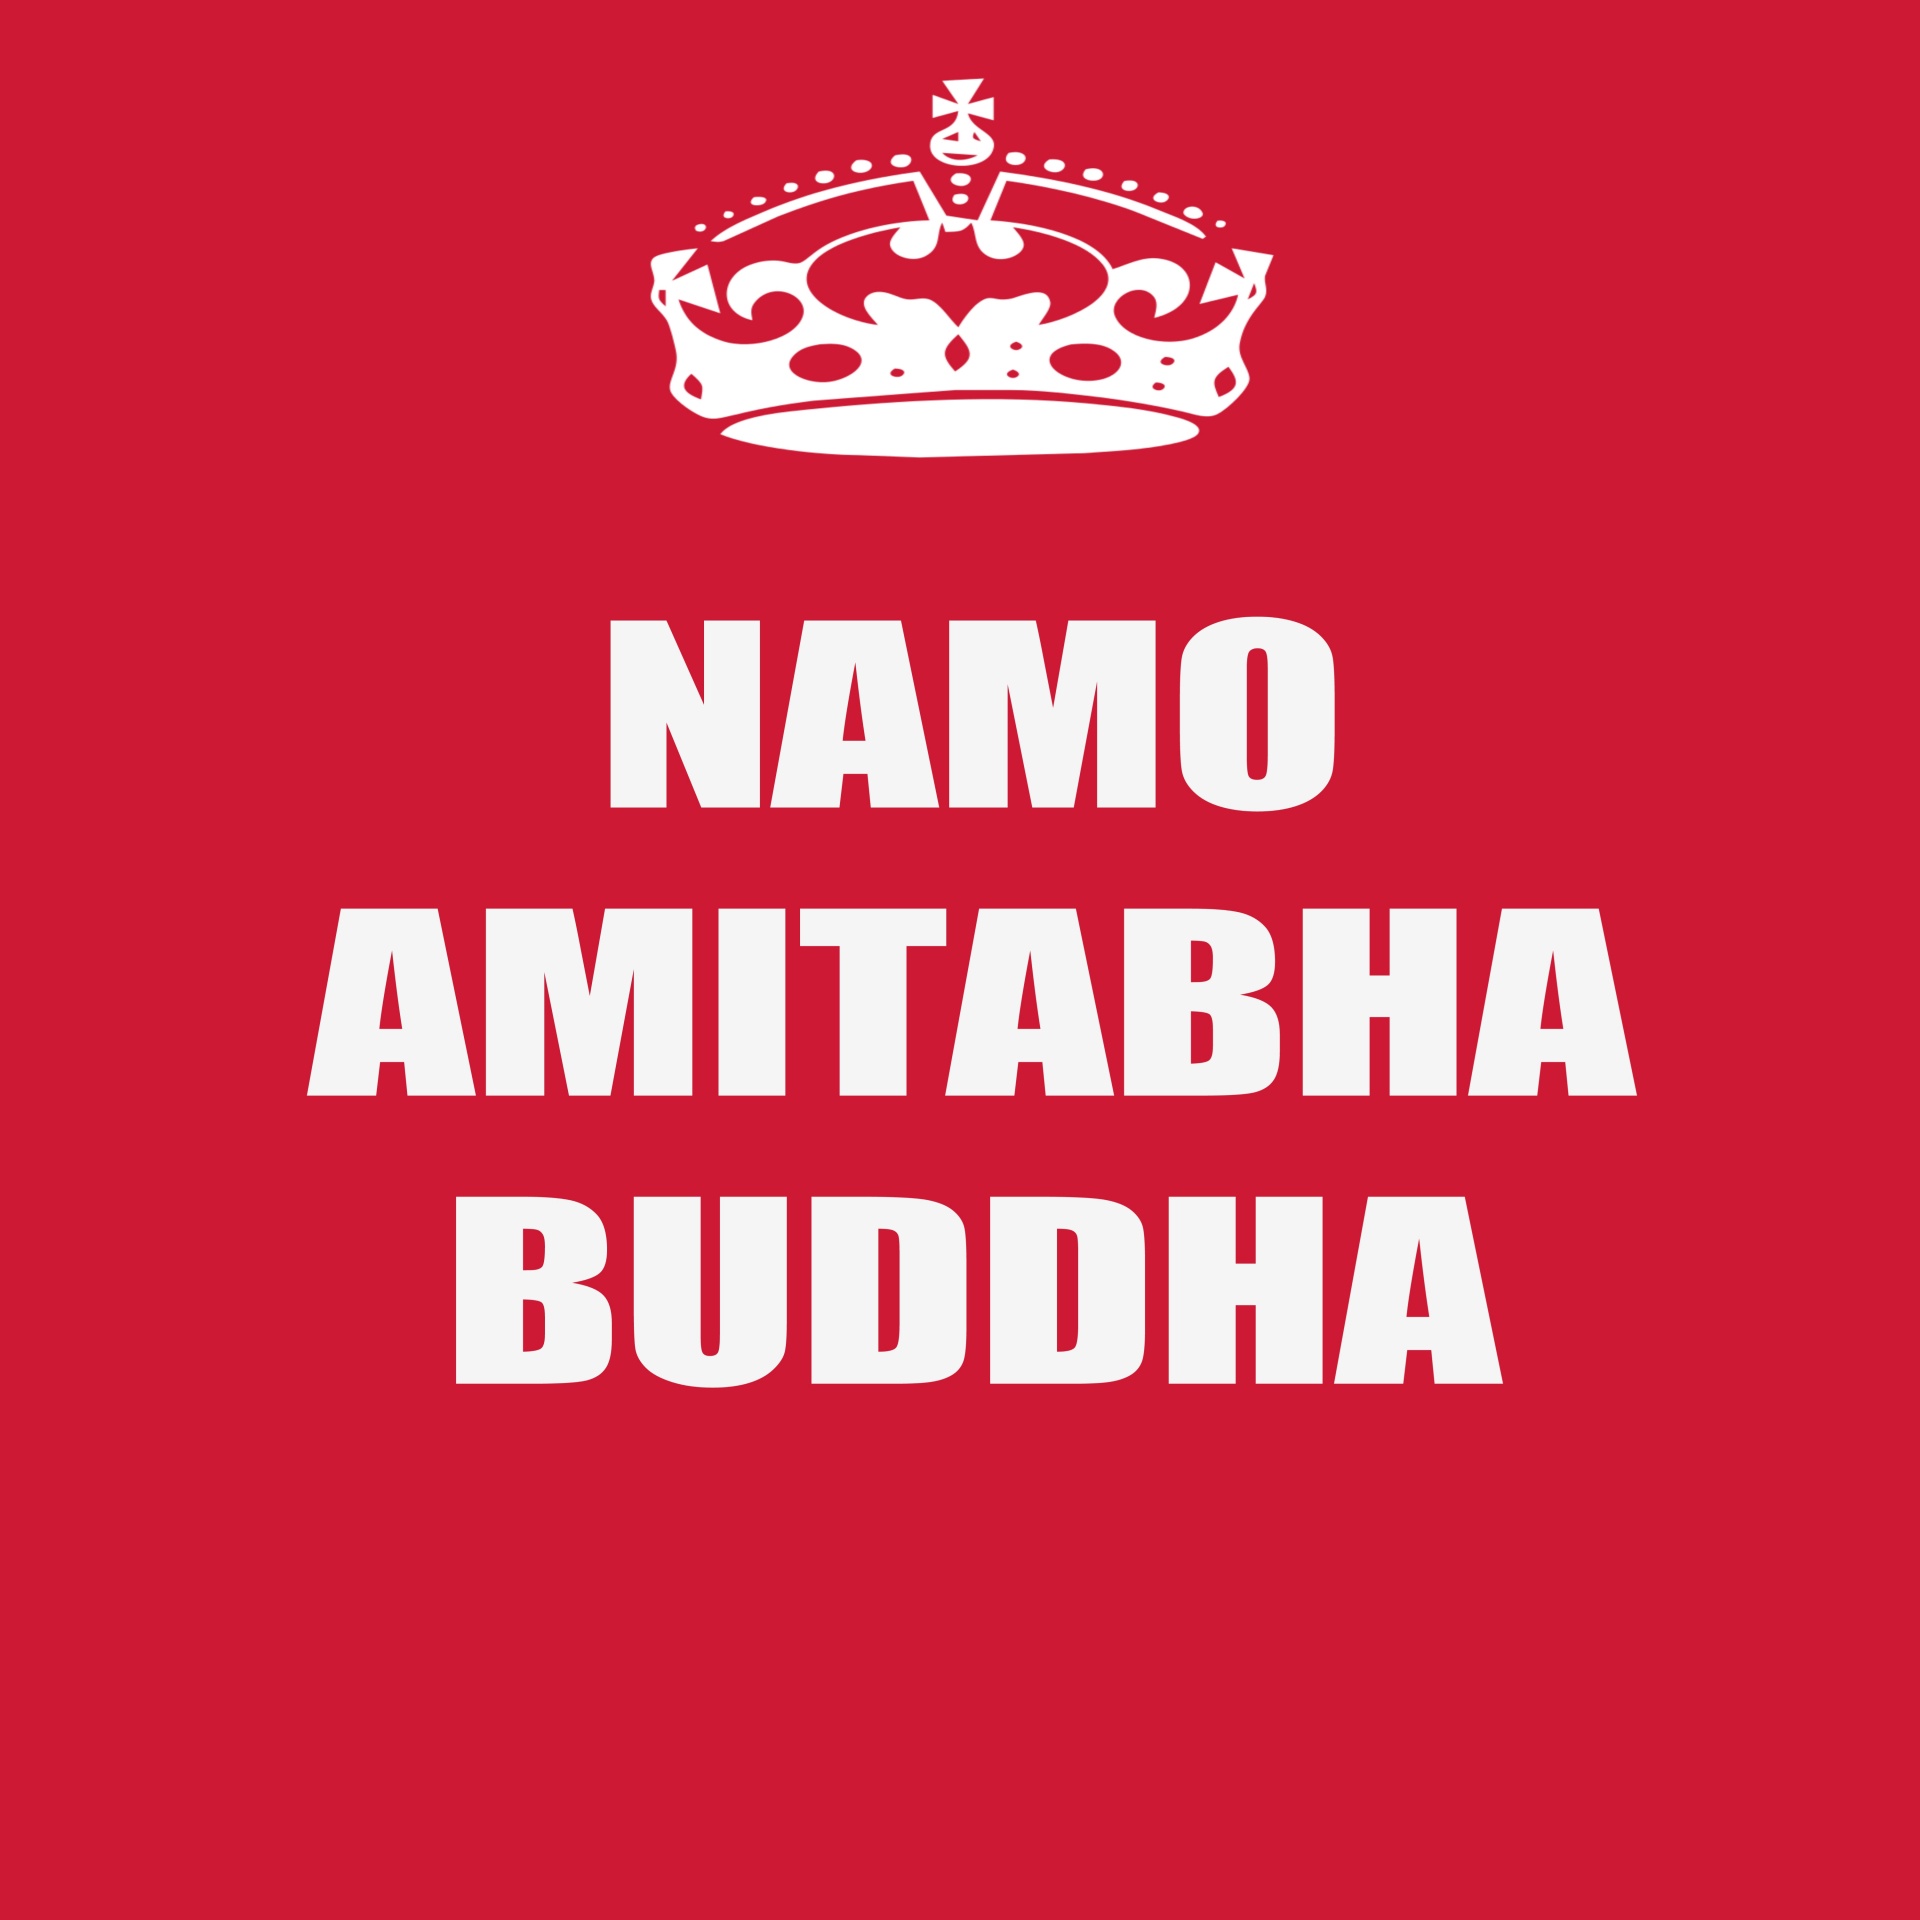 Namo,  Amitabha,  Buda,  Sveikinimai,  Tekstas,  Pranešimas,  Rojus,  Sukhavati,  Dharma,  Sangha